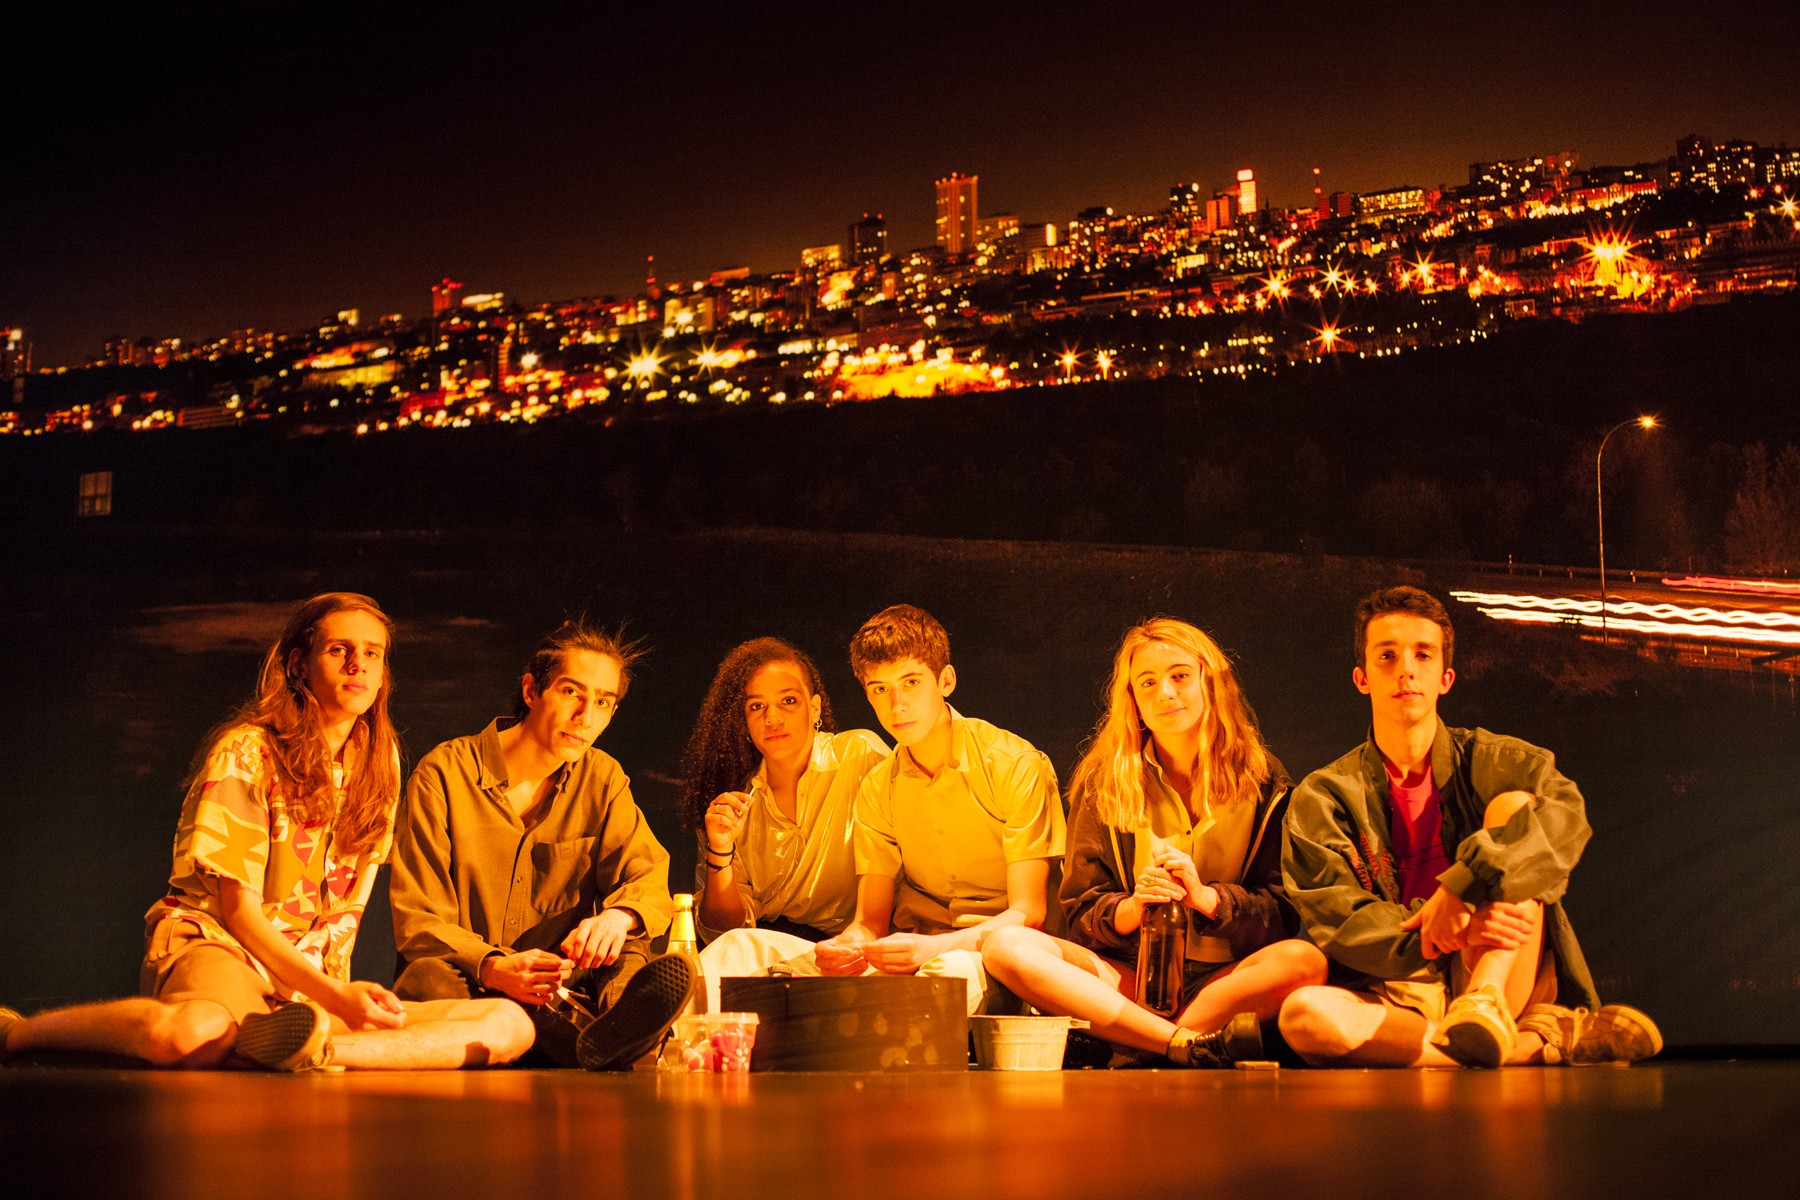 Sechs junge Menschen sitzen am Boden und blicken in die Kamera. Im Hintergrund sieht man eine in der Nacht erleuchtete Stadt.